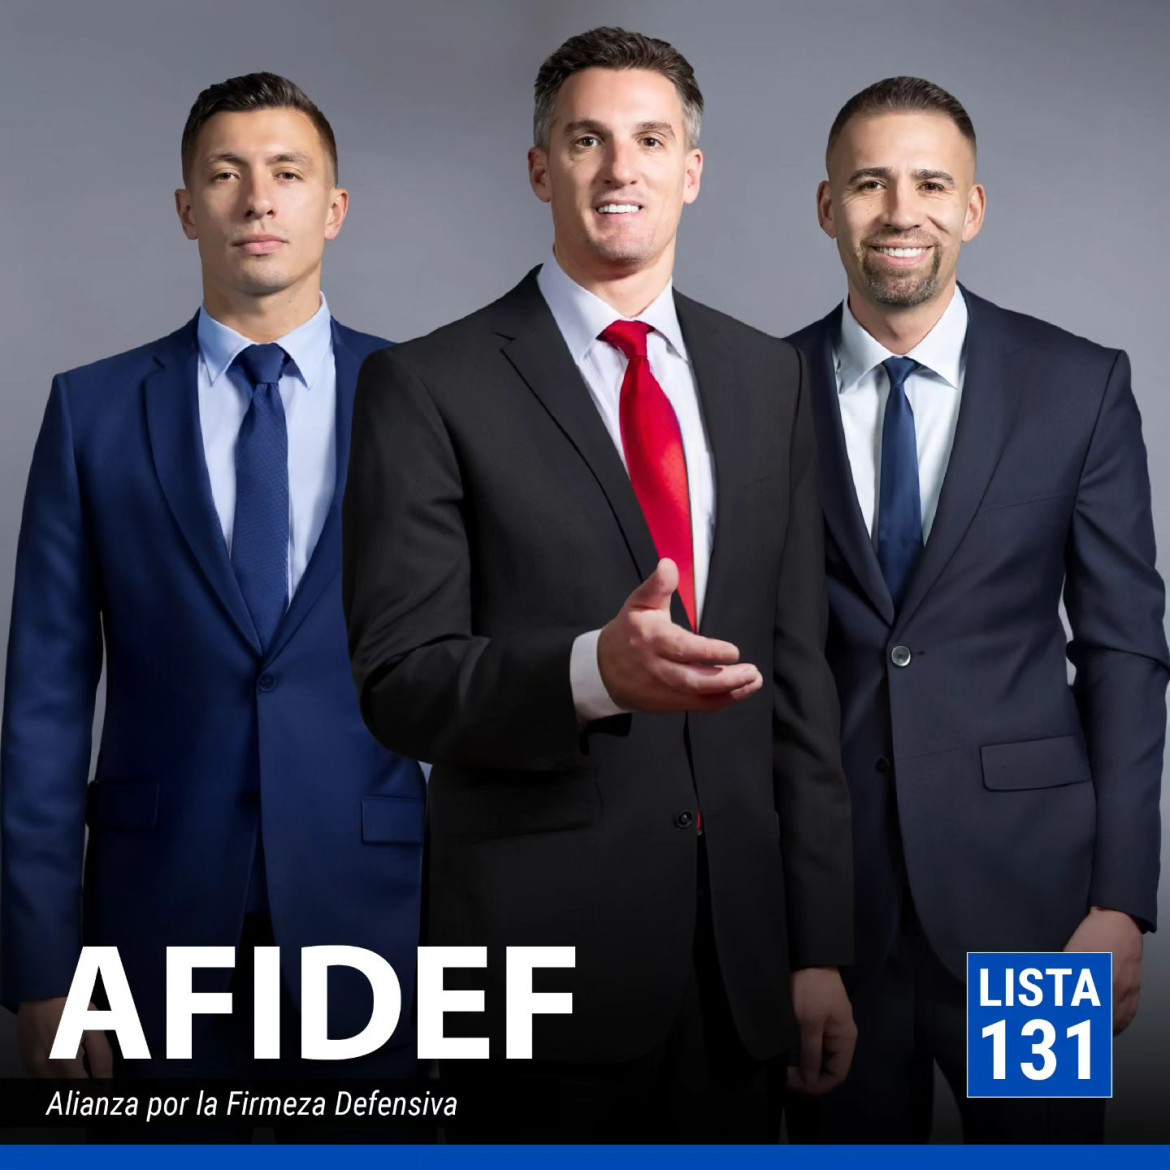 Franco Armani, Nicolás Otamendi y Lisandro Martínez conforman AFIDEF. Foto: Instagram @ferdelucaok.